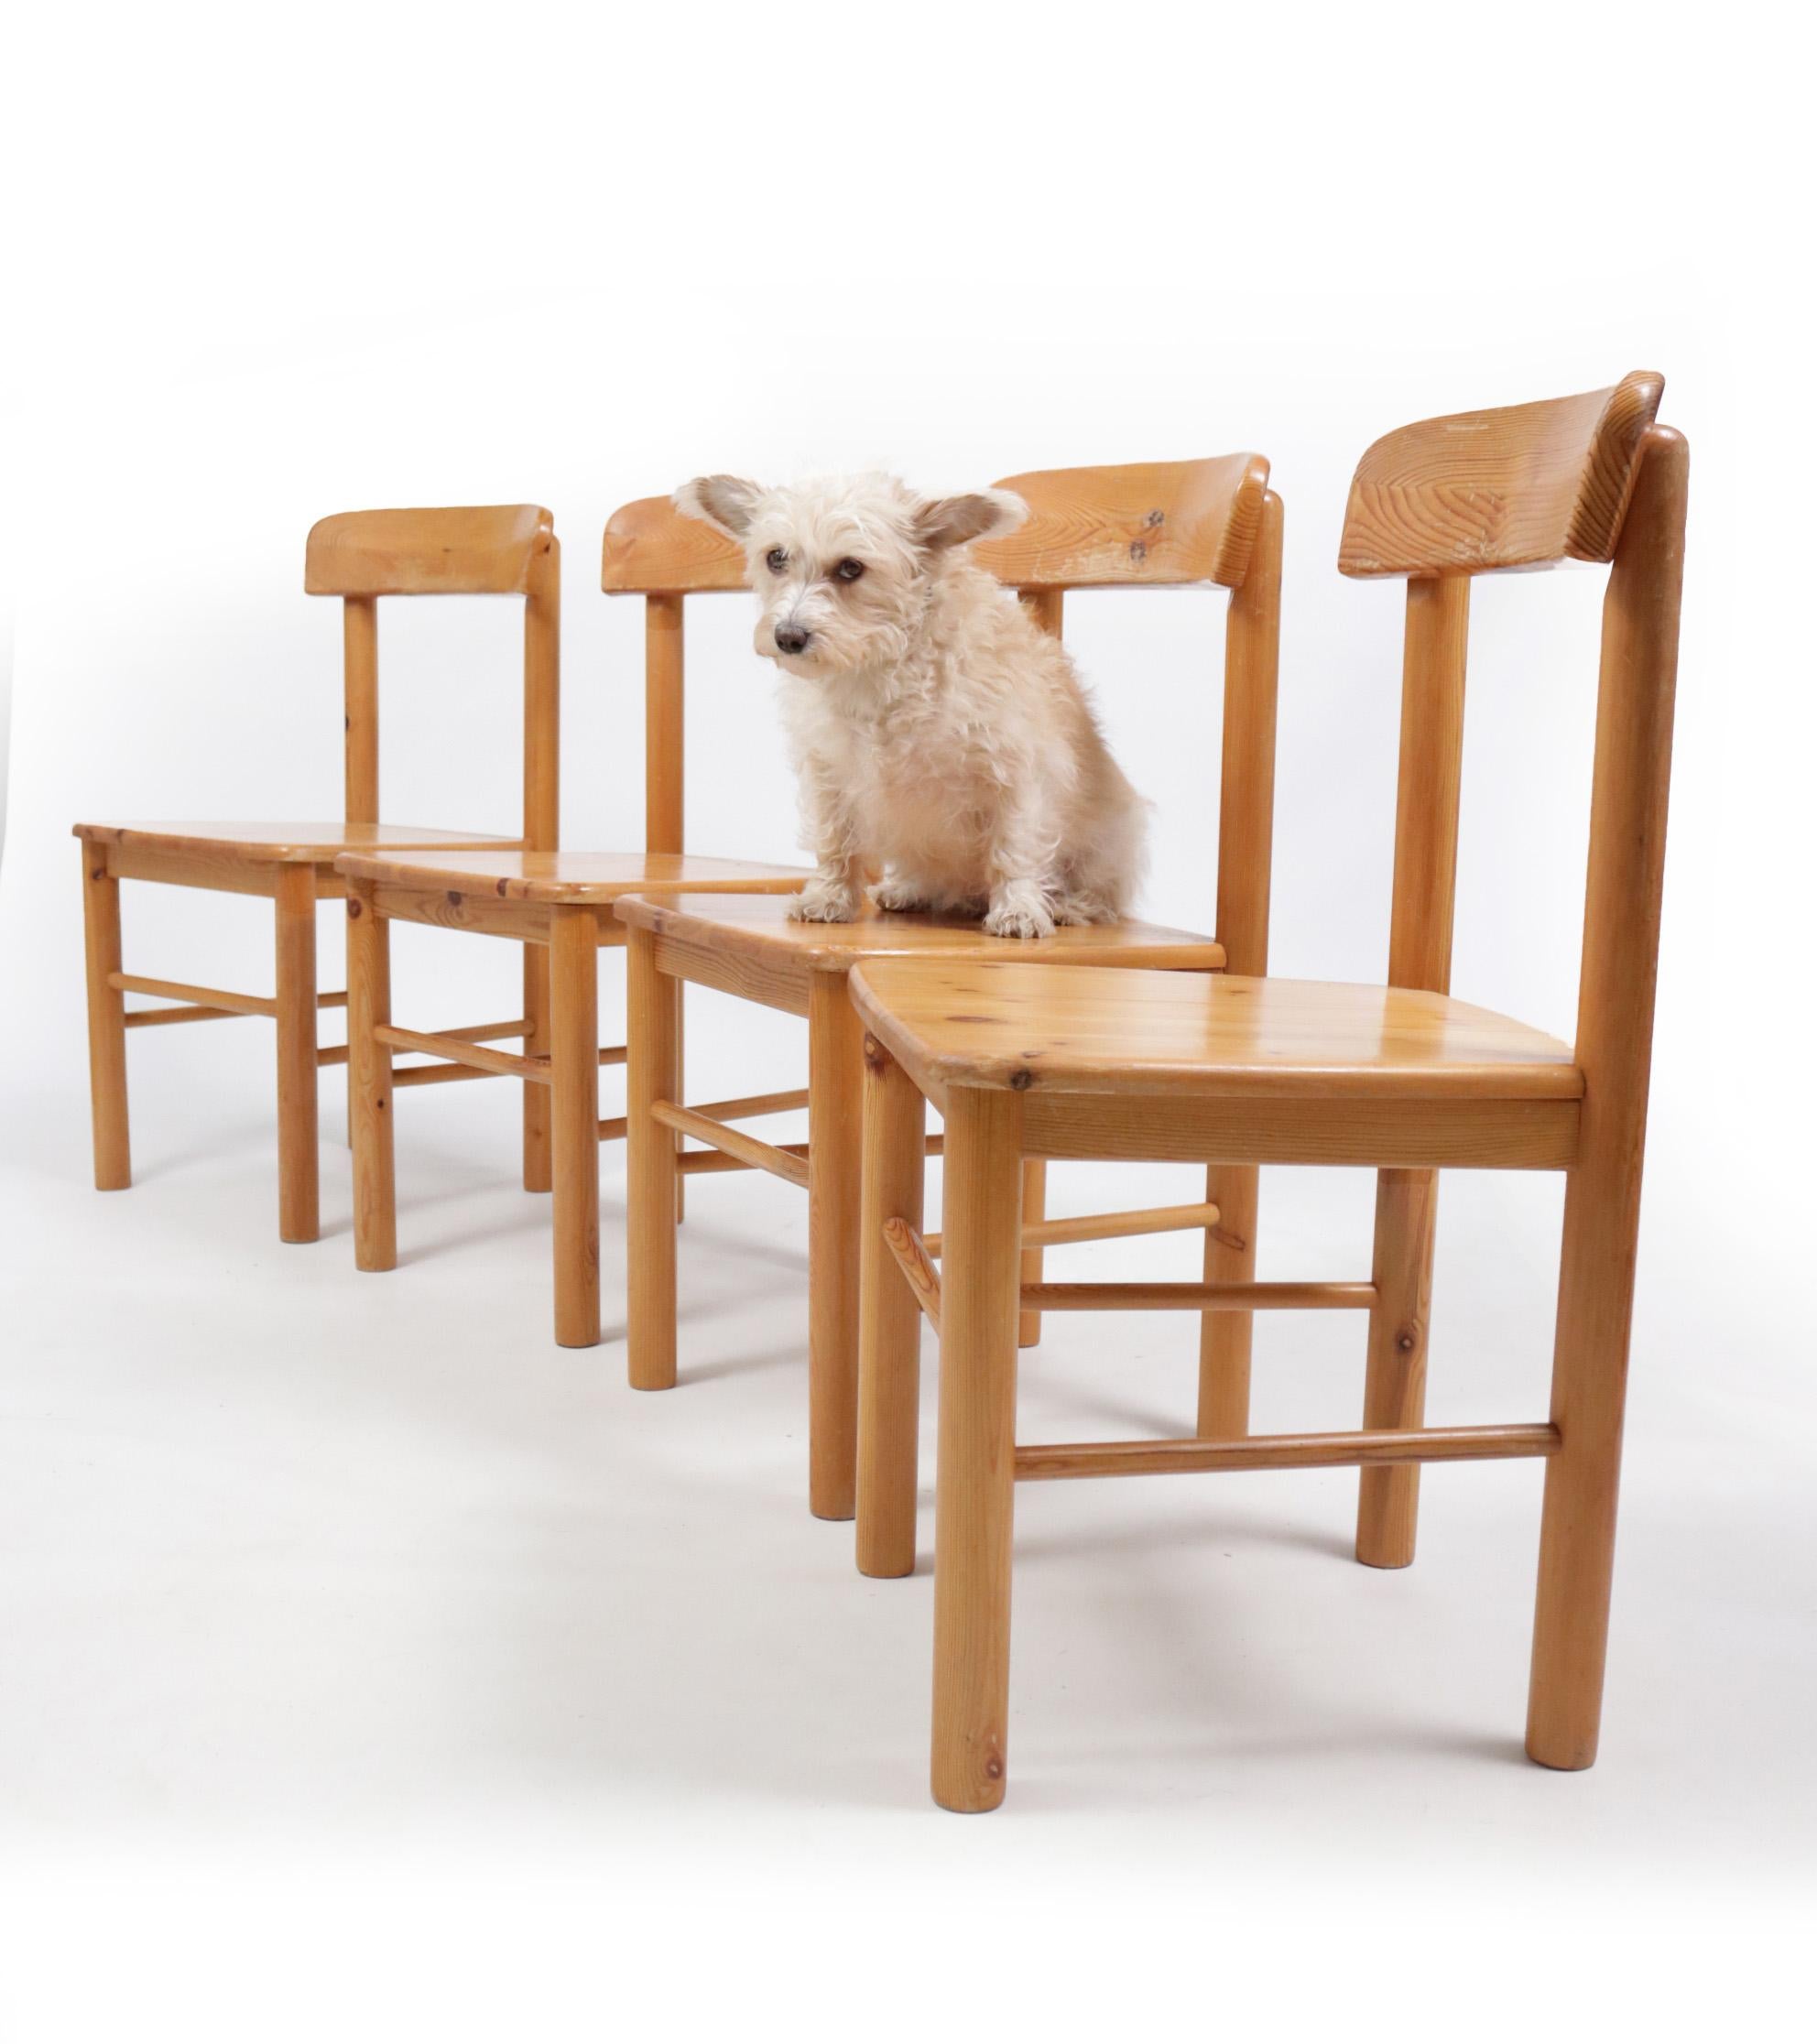 4 chaises modernistes en bois de pin fabriquées de la même manière que les chaises conçues par Rainer Daumiller pour Hirtshals Saavaerk.
Nous n'avons pas trouvé exactement cette version, donc pour l'instant, parlez à la manière de.

Les chaises